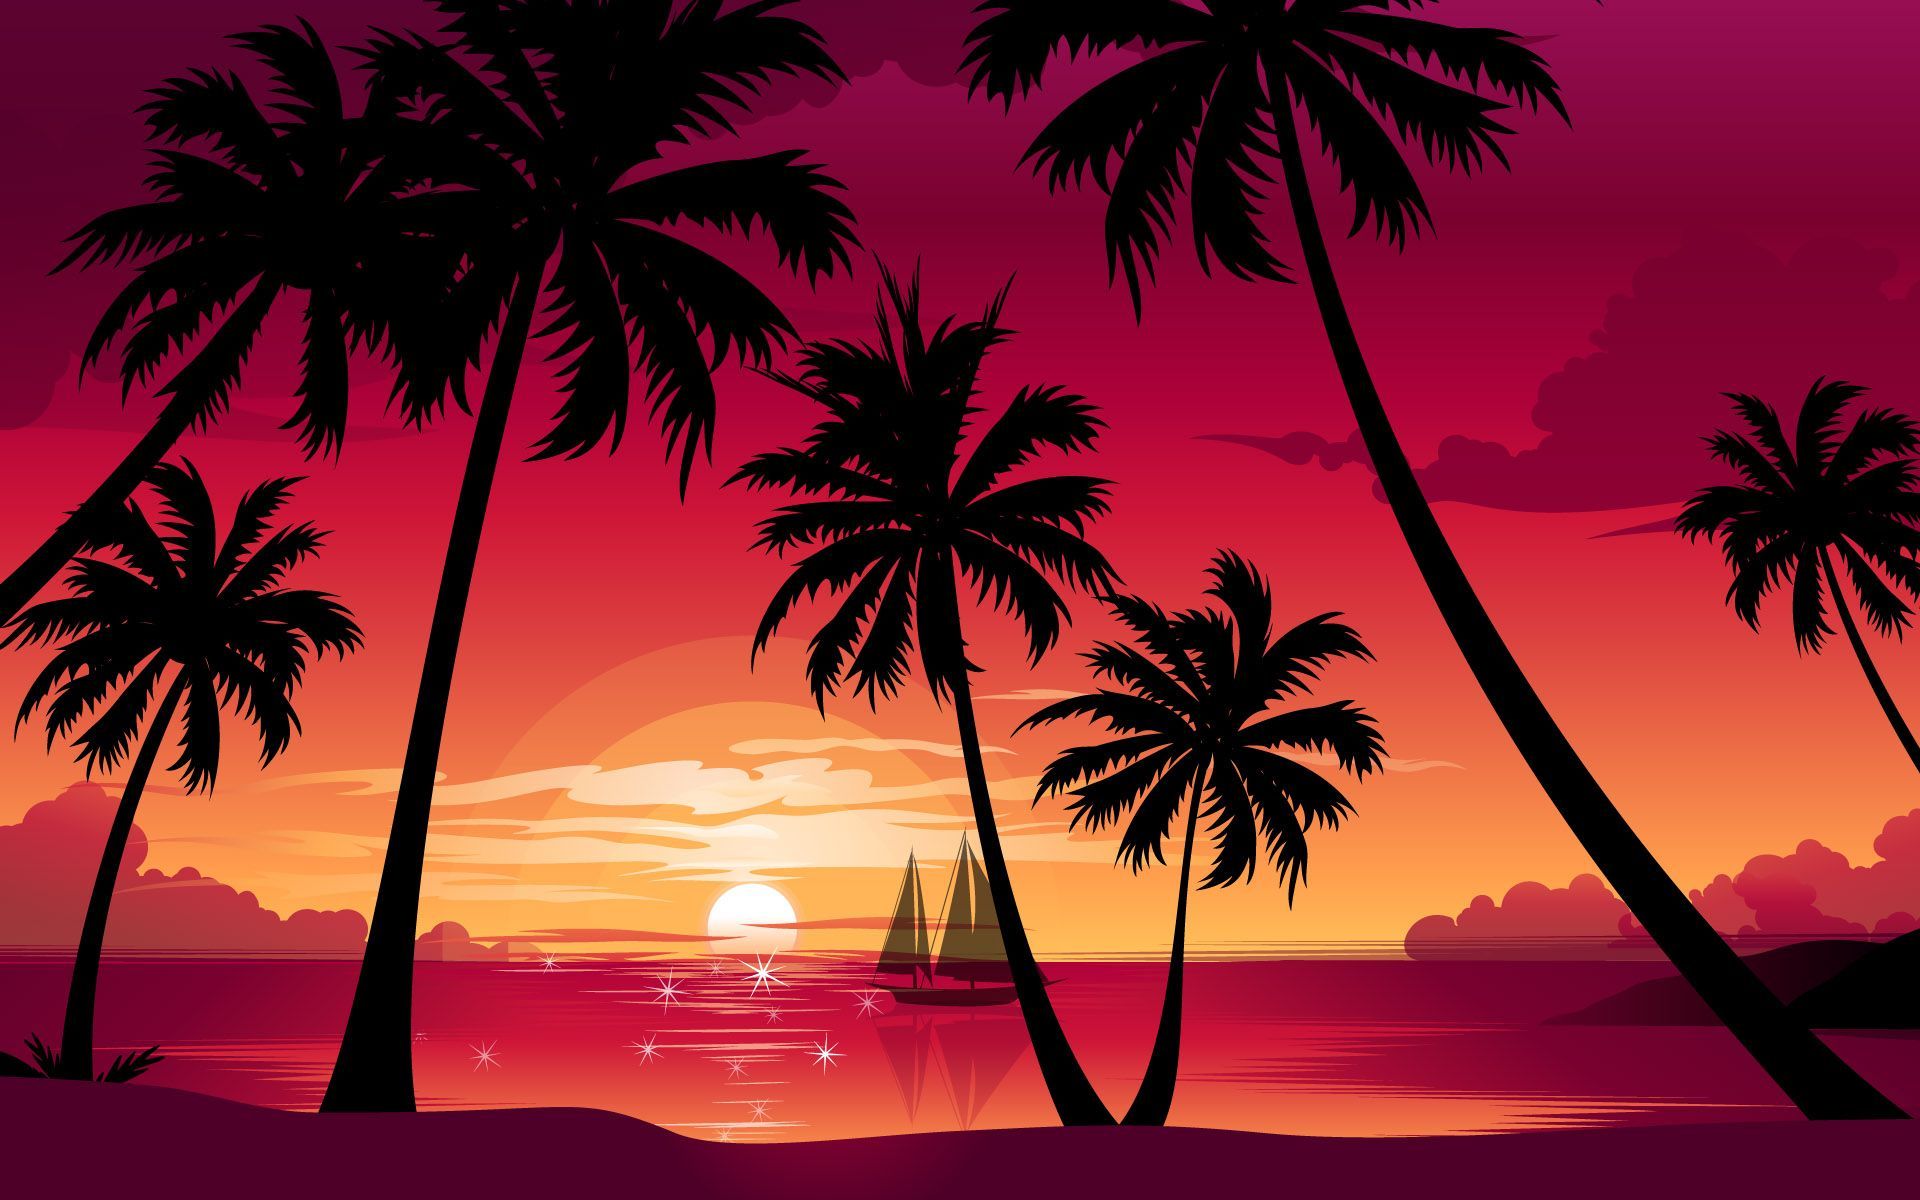 Aesthetic Sunset Desktop Wallpaper